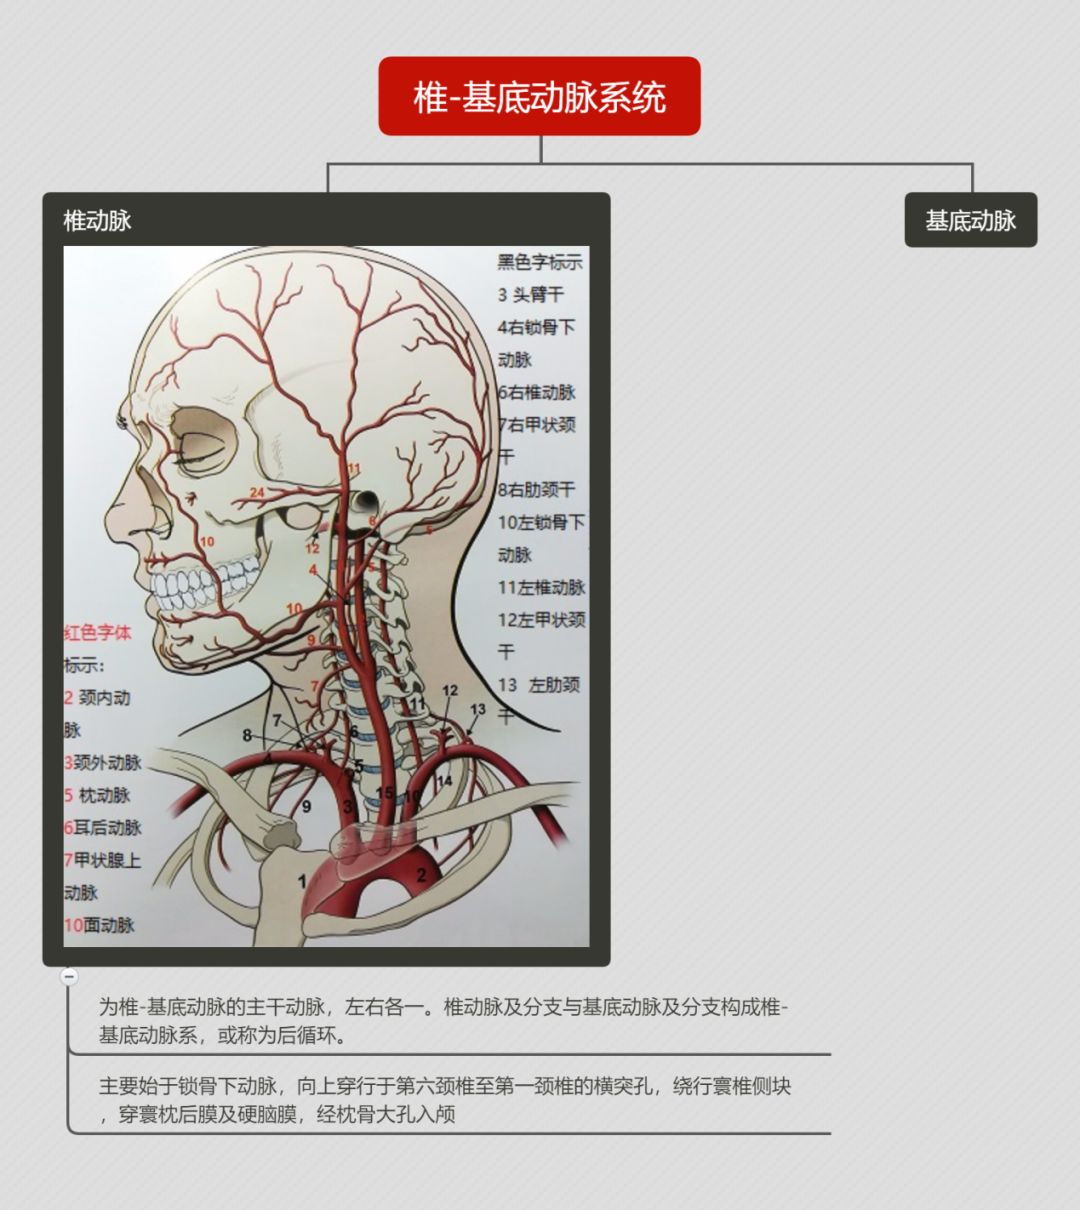 细说<font color="red">椎</font>基底动脉系统的解剖